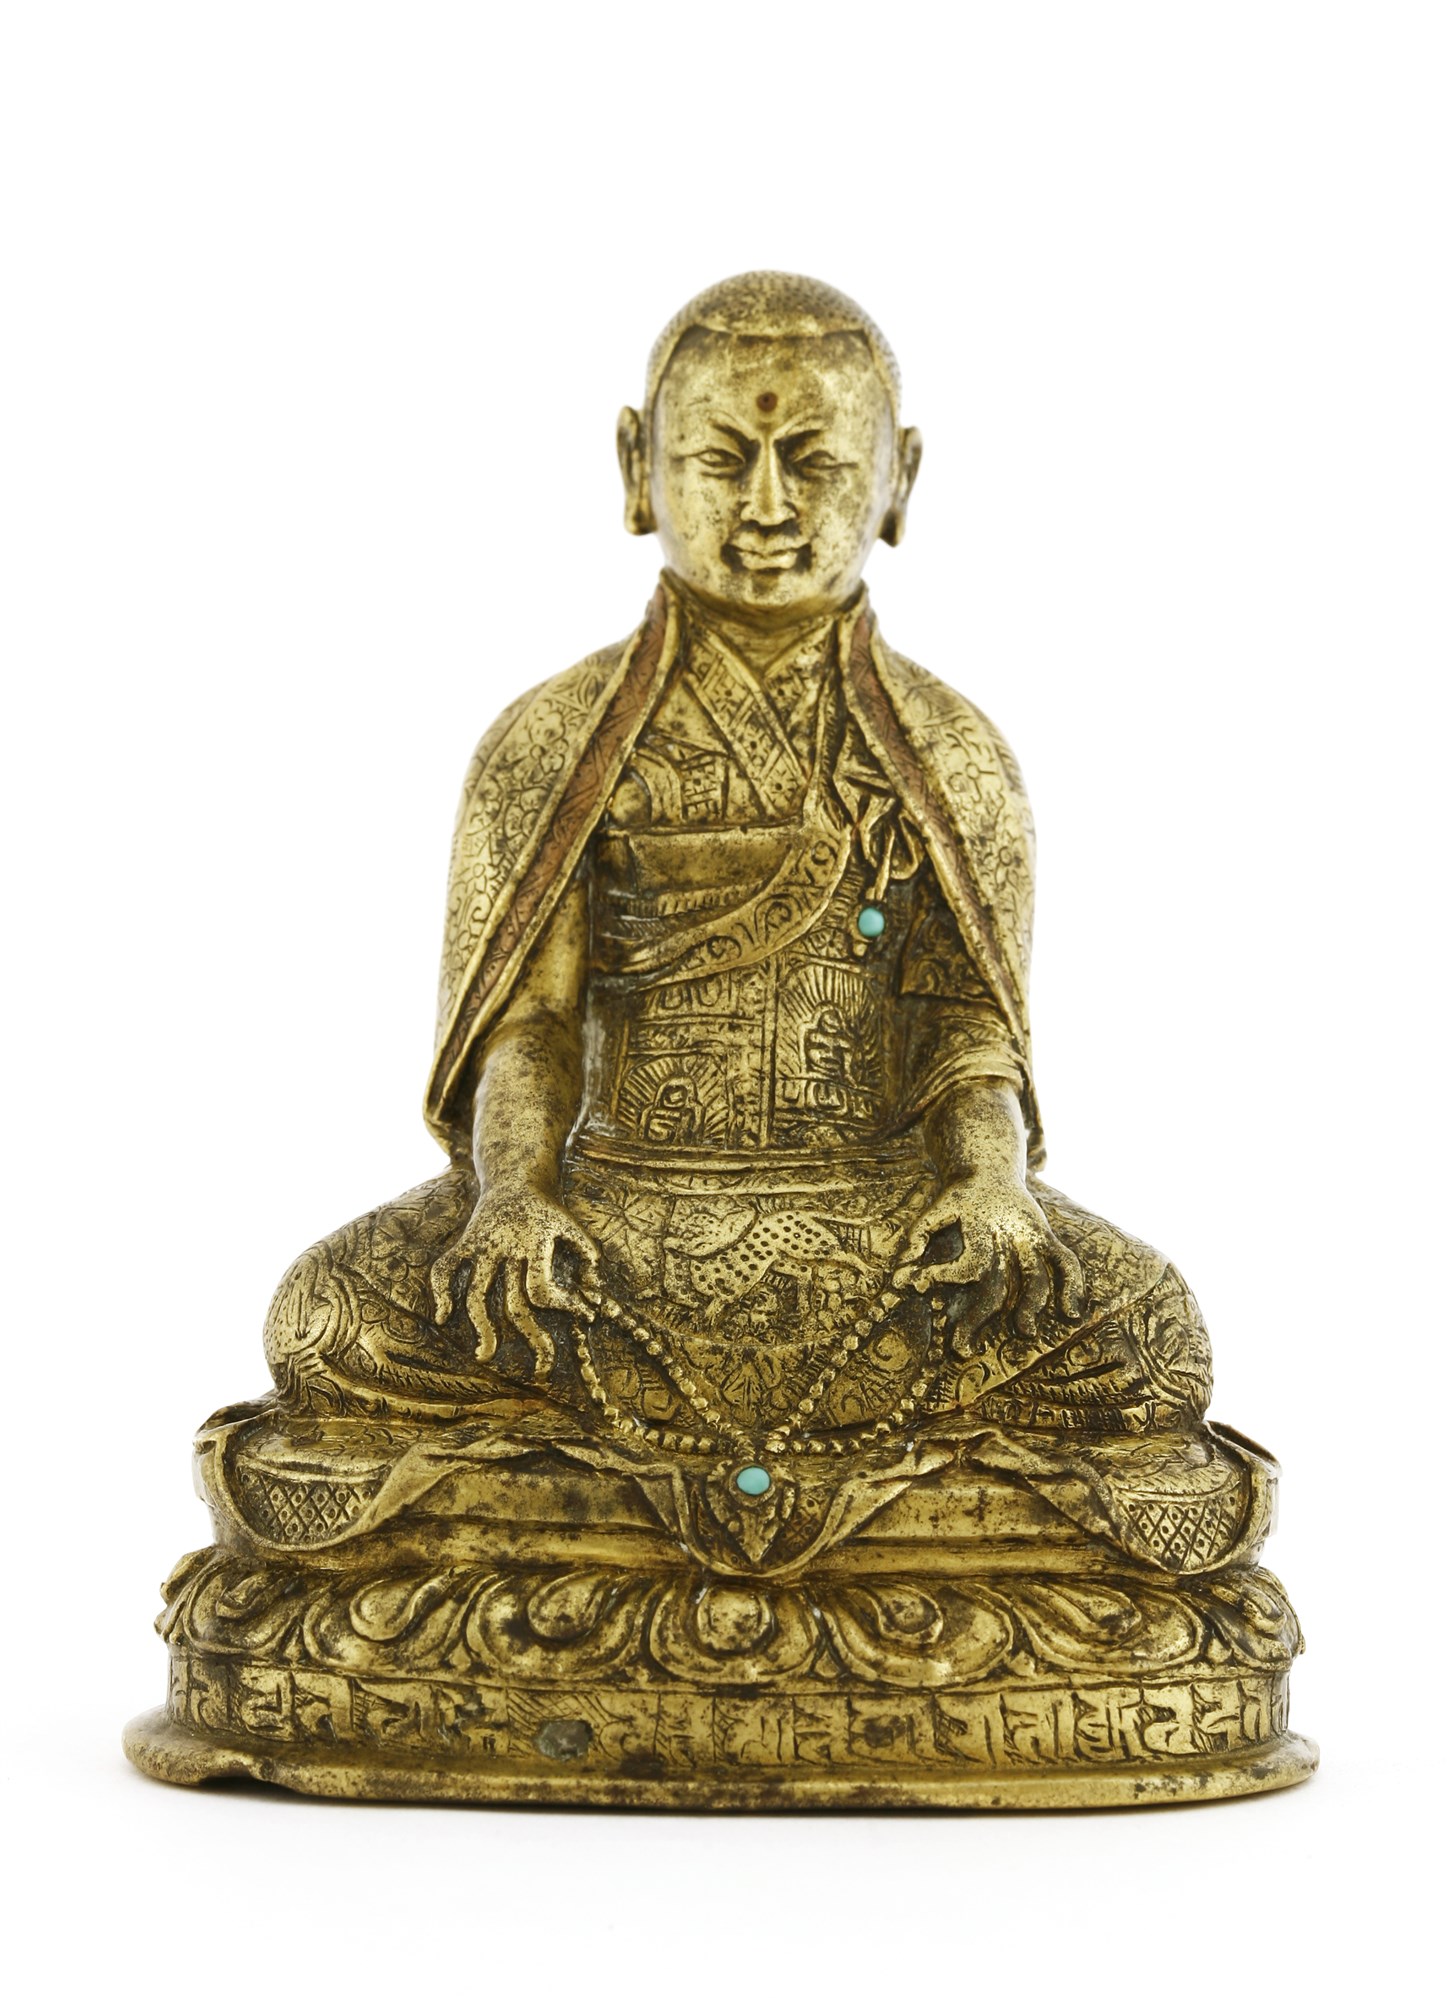 16th century Sino-Tibetan bronze bodhisattva